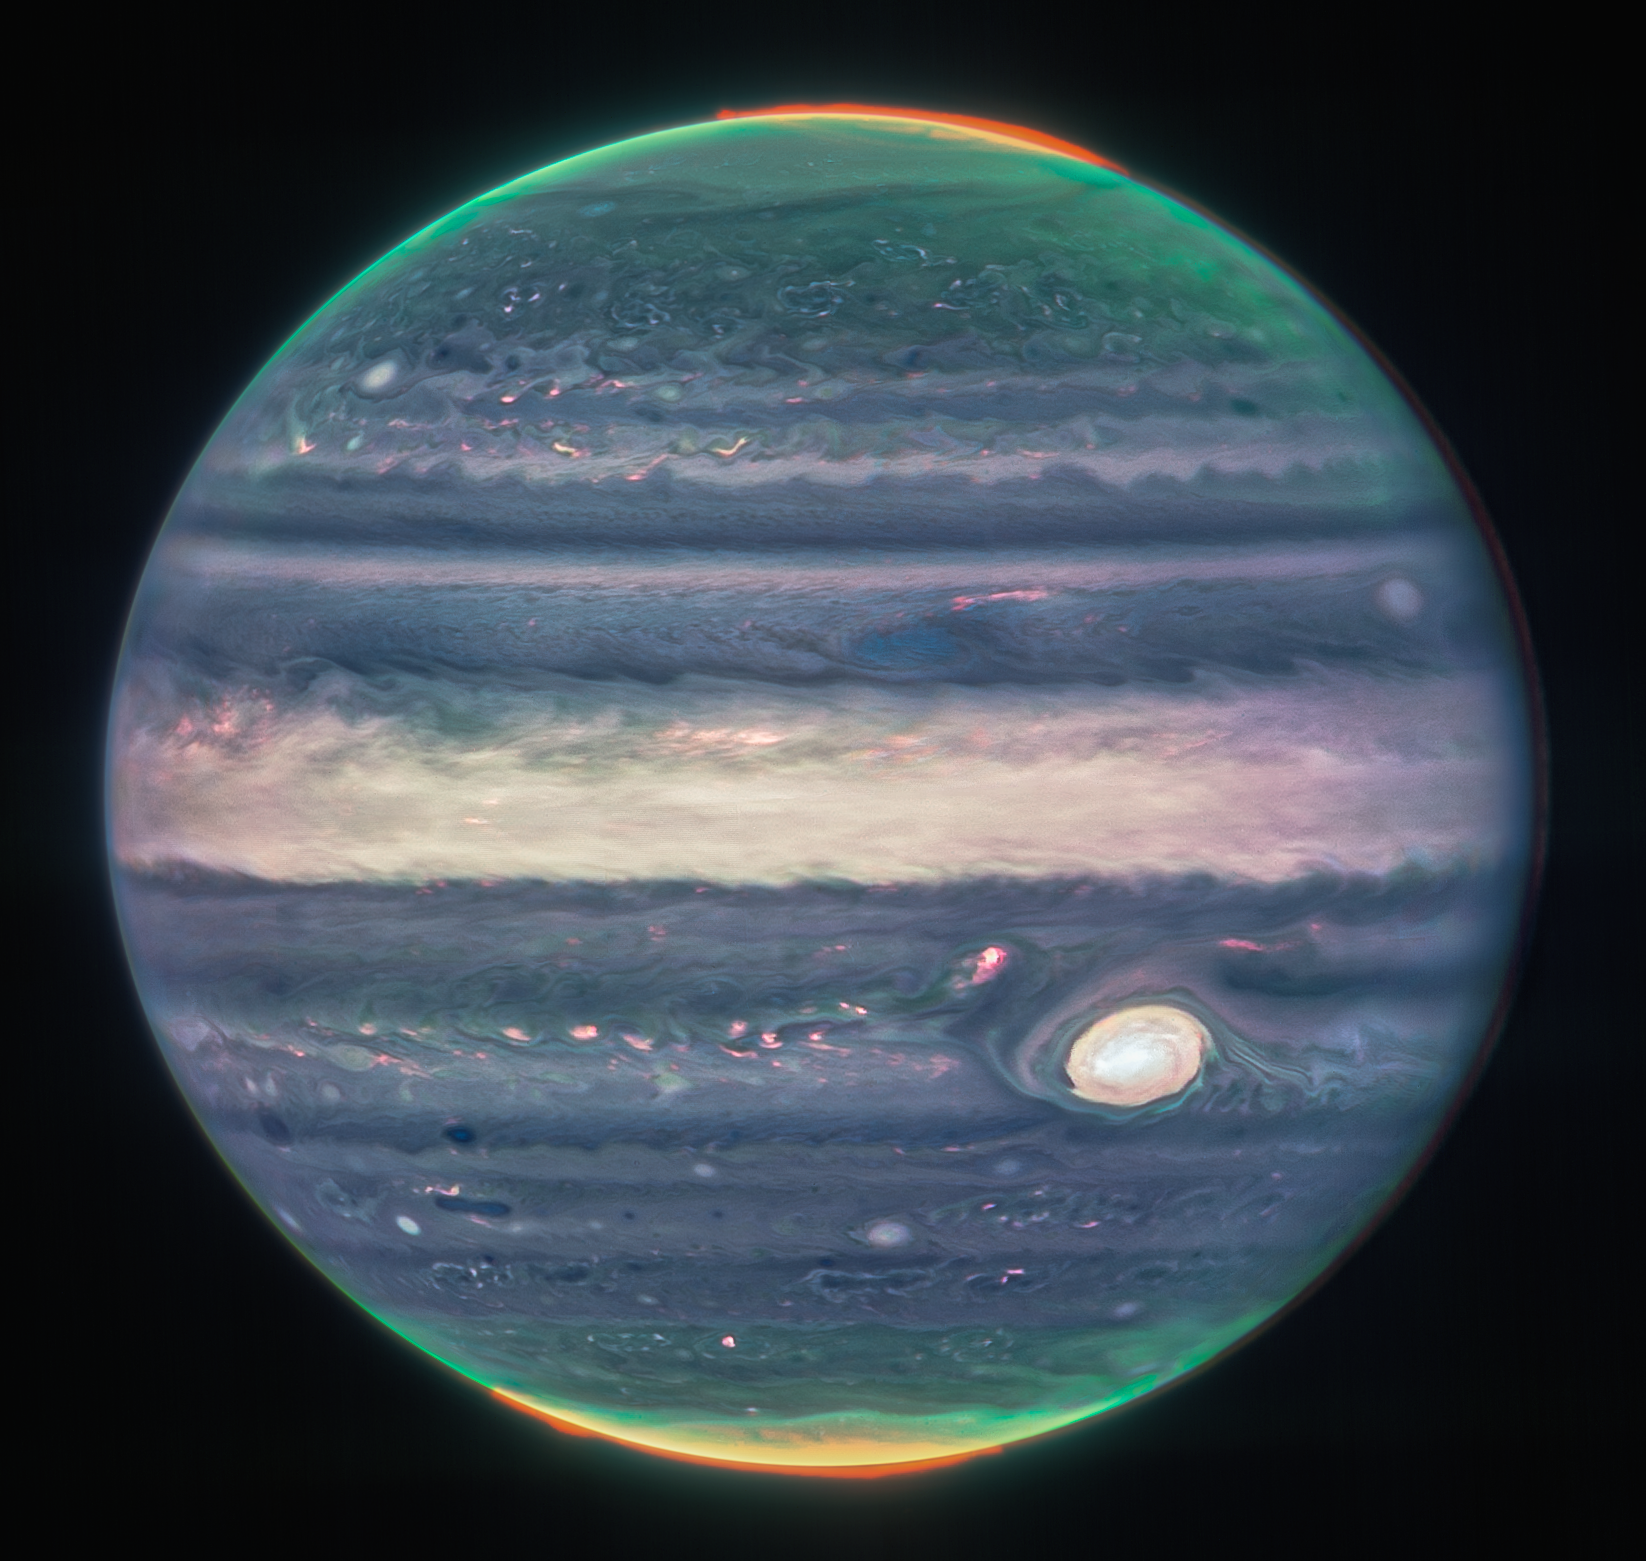 Na ilustracji: Zdjęcie Jowisza zrobione Teleskopem Webba z kamerą NIRCam w trzech barwach / filtrach – F360M (czerwony), F212N (żółto-zielony) i F150W2 (cyjan/niebieskozielony) z uwzględnieniem rotacji planety. Na zdjęciu nad północnym i południowym biegunem Jowisza widać zorze polarne mapowane odcieniami koloru czerwonego. Ten kolor posiada również światło odbite od niżej położonych chmur oraz zamgleń w górnej części atmosfery Jowisza. Odcieniami koloru żółtego i zielonego są mapowane zamglenia wirujące wokół północnego i południowego bieguna planety. Natomiast kolorem niebieskim jest mapowane światło, które odbija się od głębszej, głównej warstwy chmur atmosfery Jowisza. Źródło: NASA, ESA, CSA, Jupiter ERS Team; opracowanie zdjęcia Judy Schmidt (projekt nauki obywatelskiej)